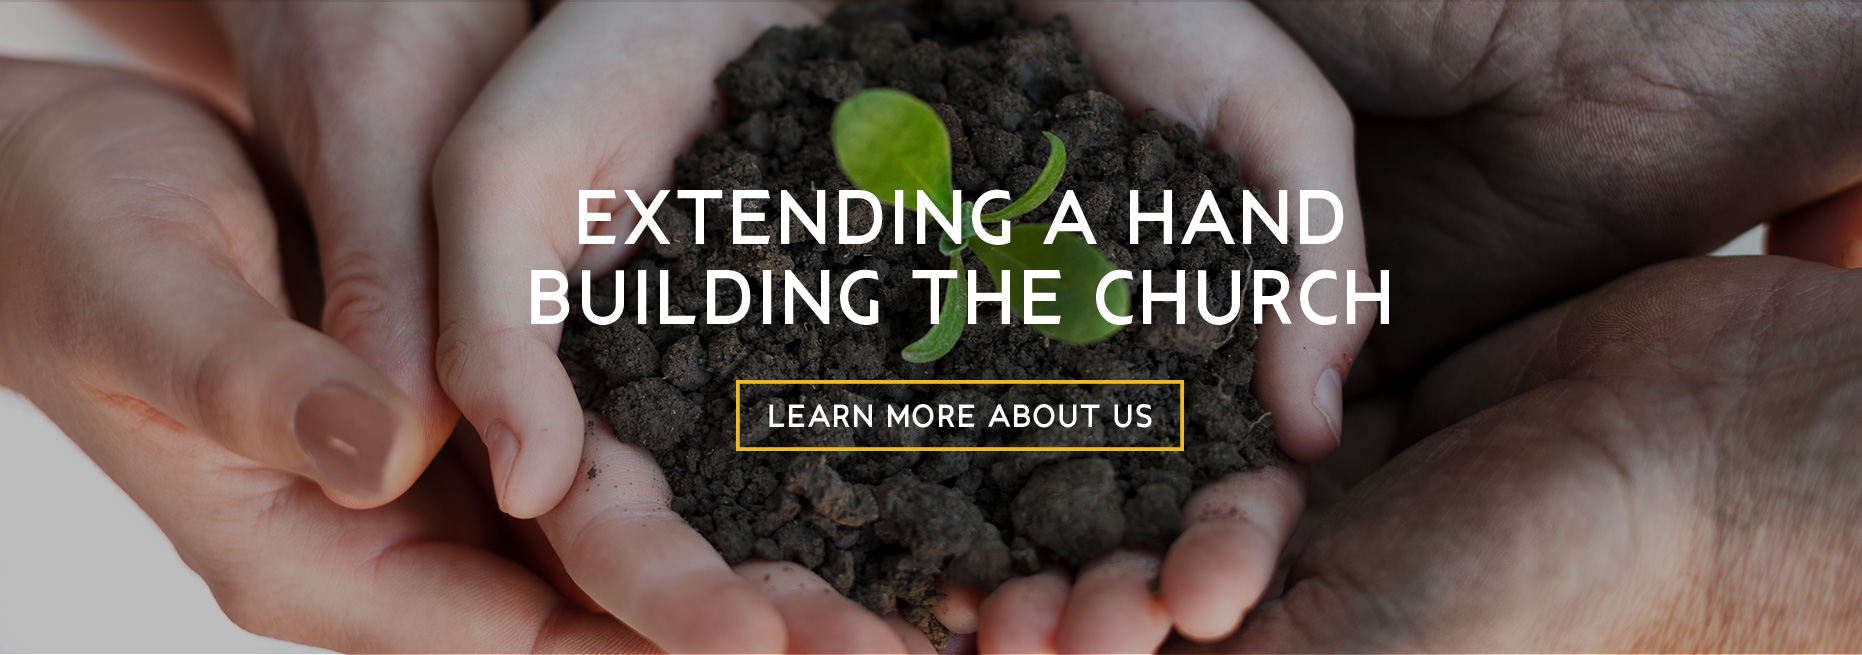 Extending a hand building the church